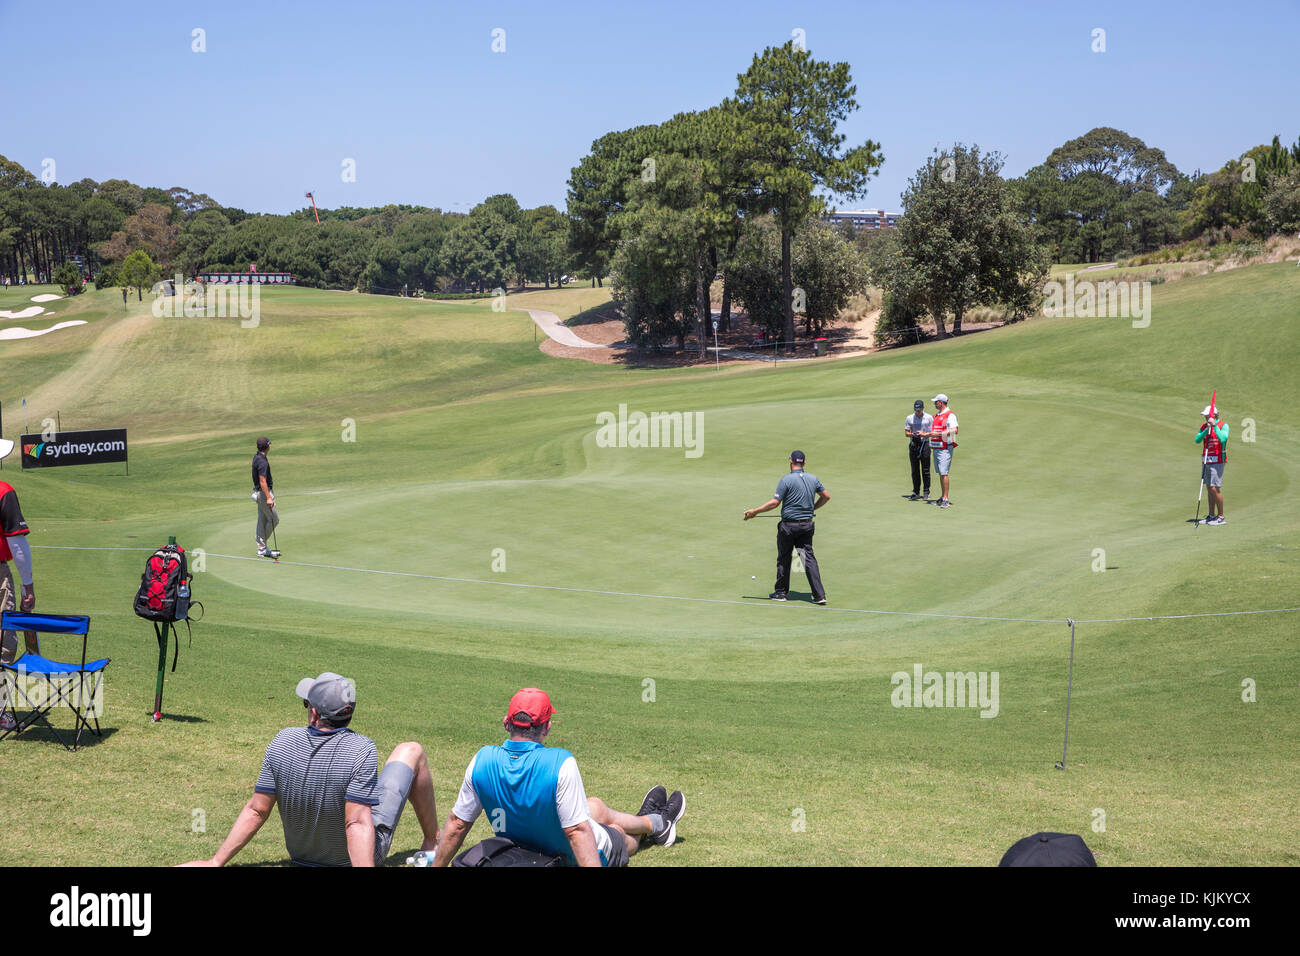 Emiratos Open de golf PGA de Australia en Sydney, Australia Foto de stock